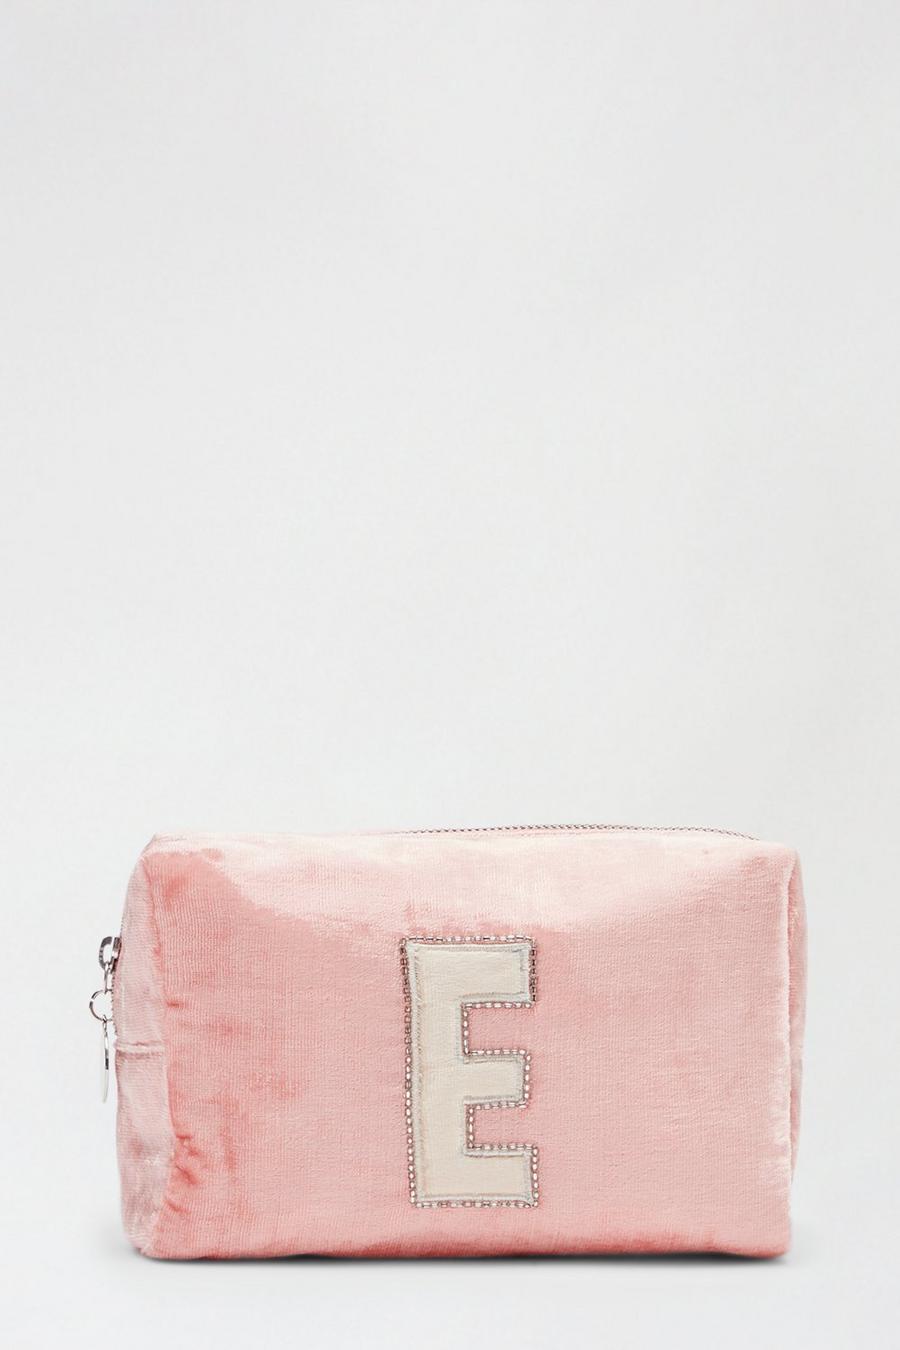 Alphabet Initial 'E' Makeup Bag